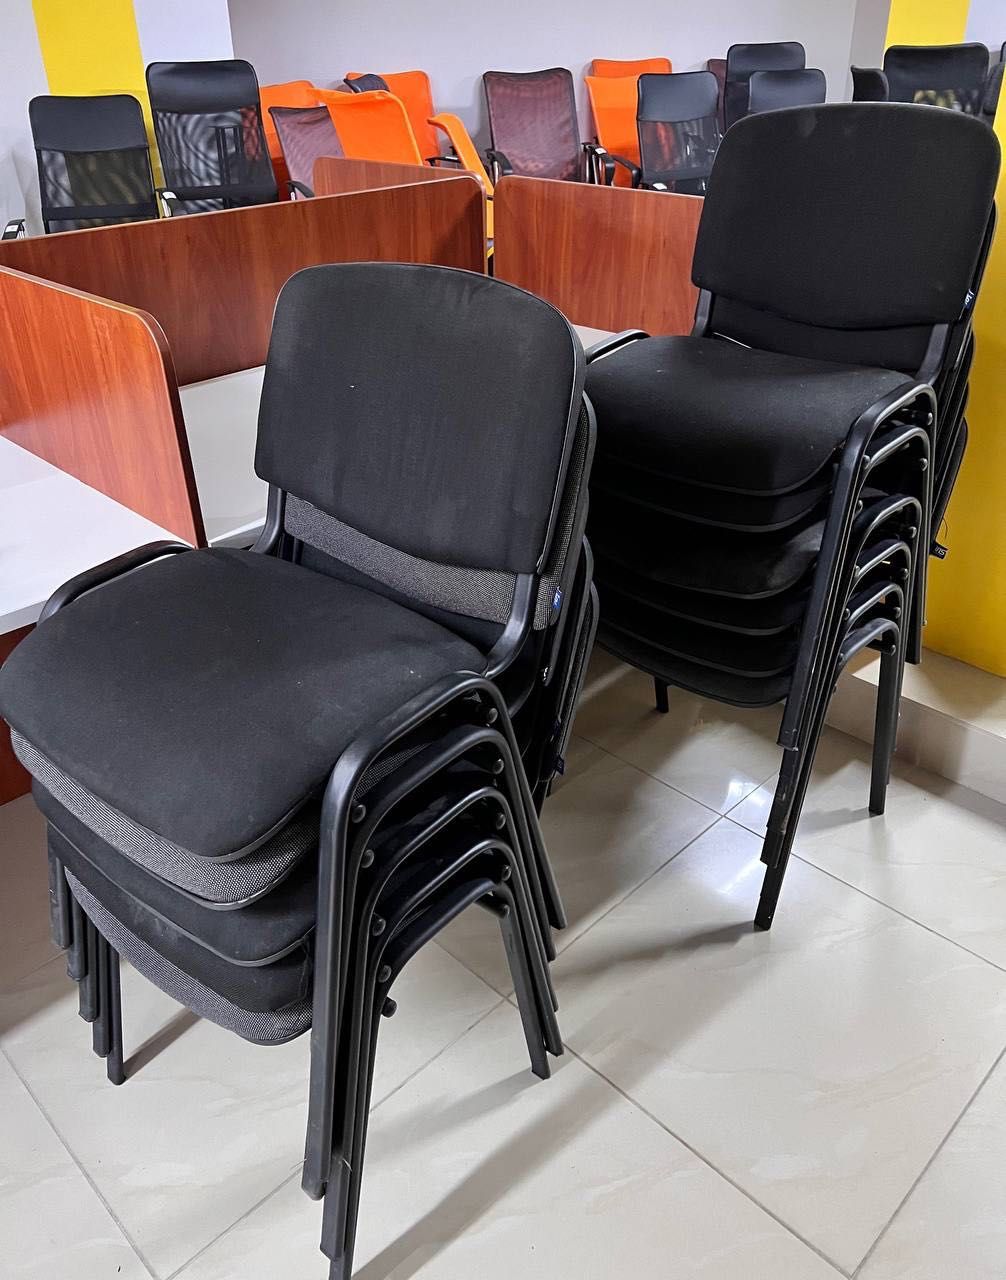 кресла руководителя крісла директора стільці стулья офисные